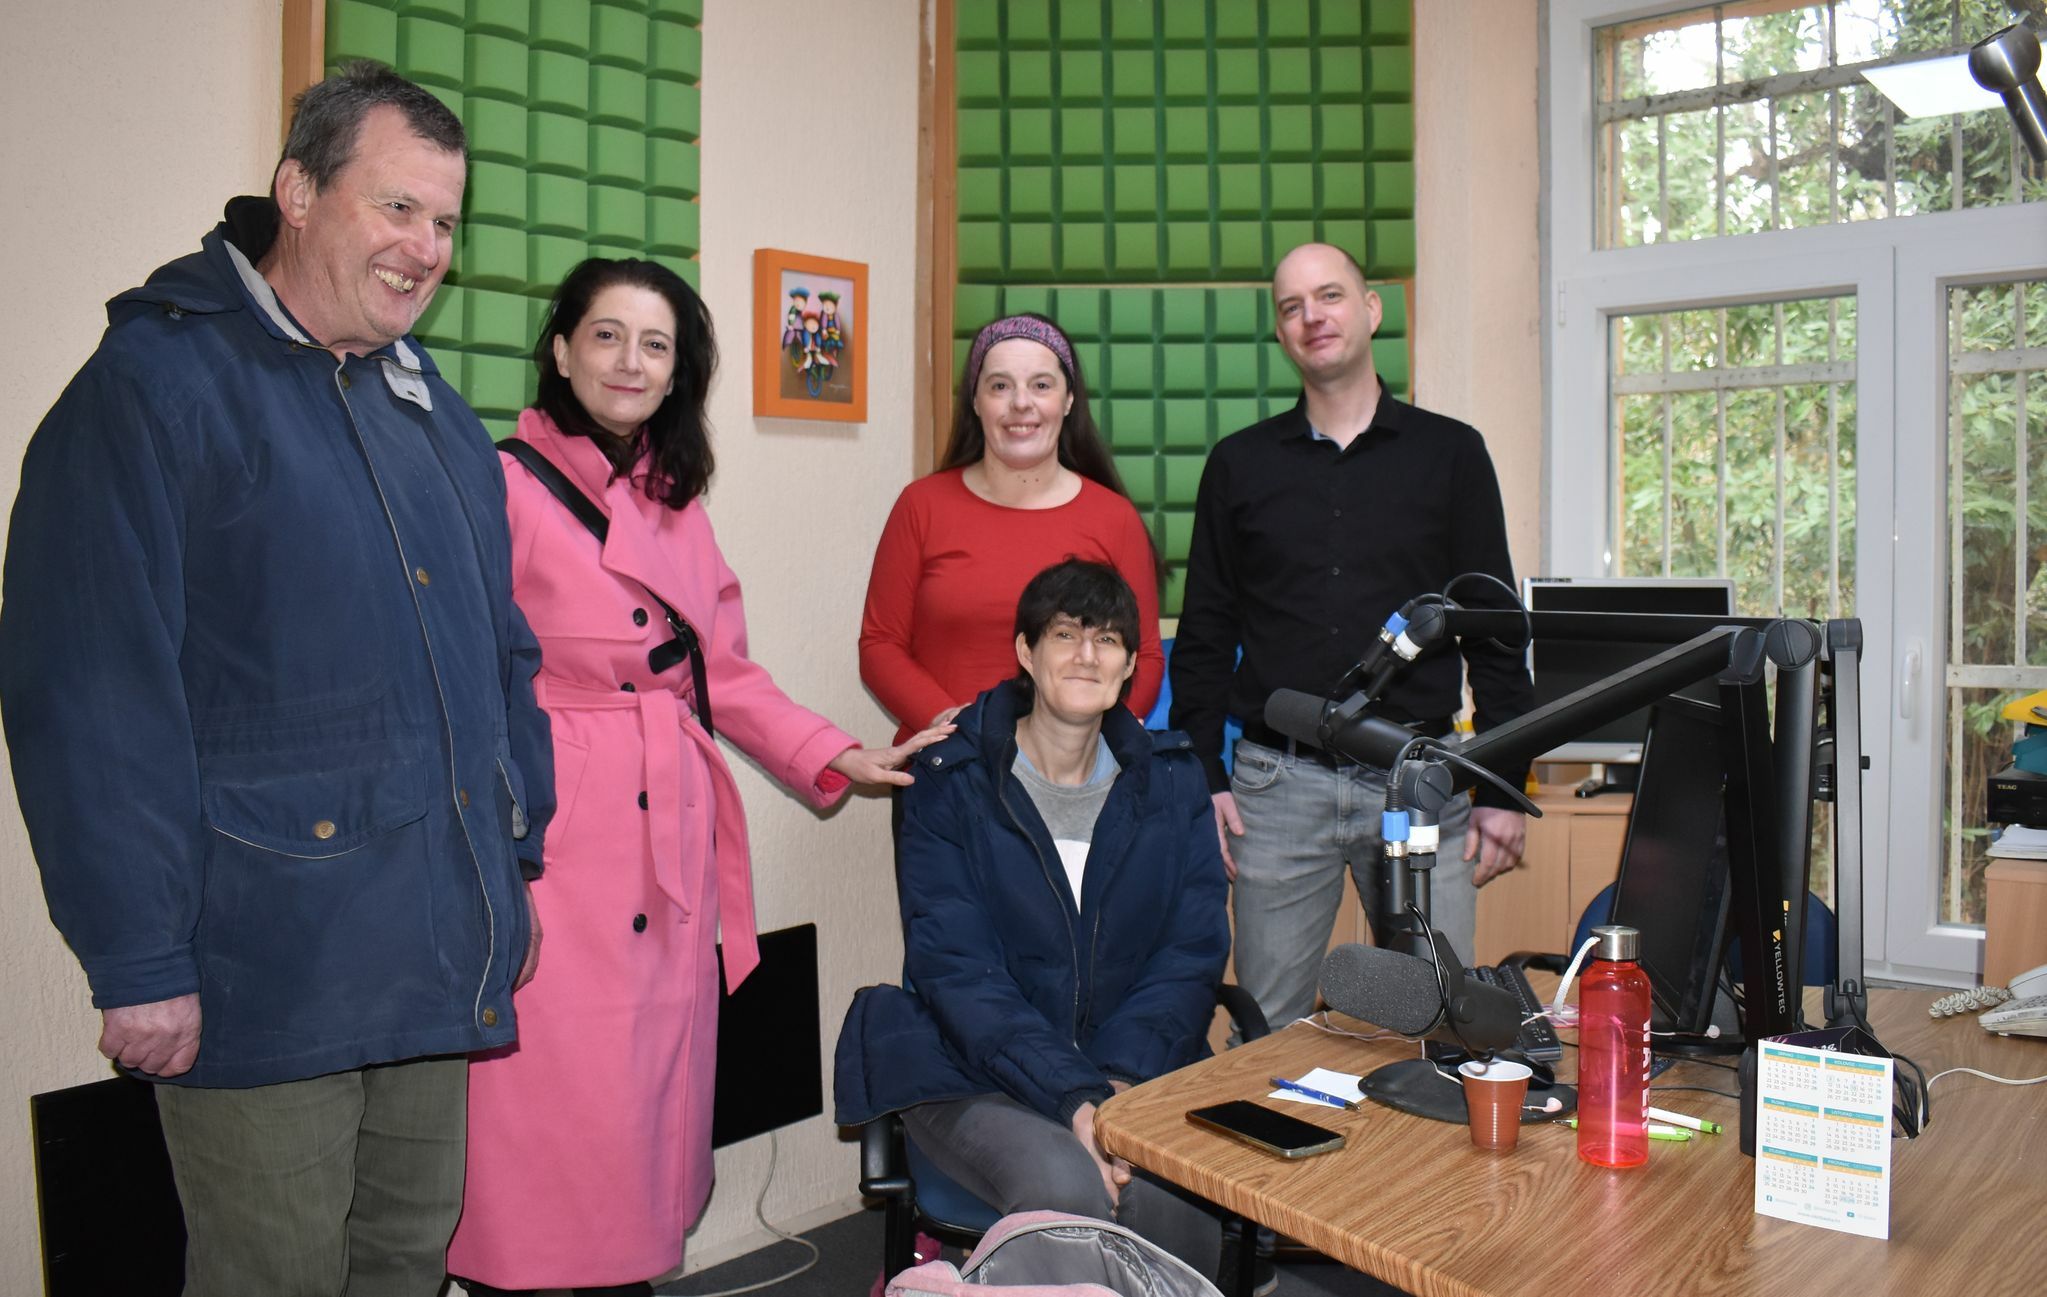 Uredništvo Spajalice stiglo je u studio Radija OK lociranom u Krasu u Općini Dobrinj / Foto M. TRINAJSTIĆ